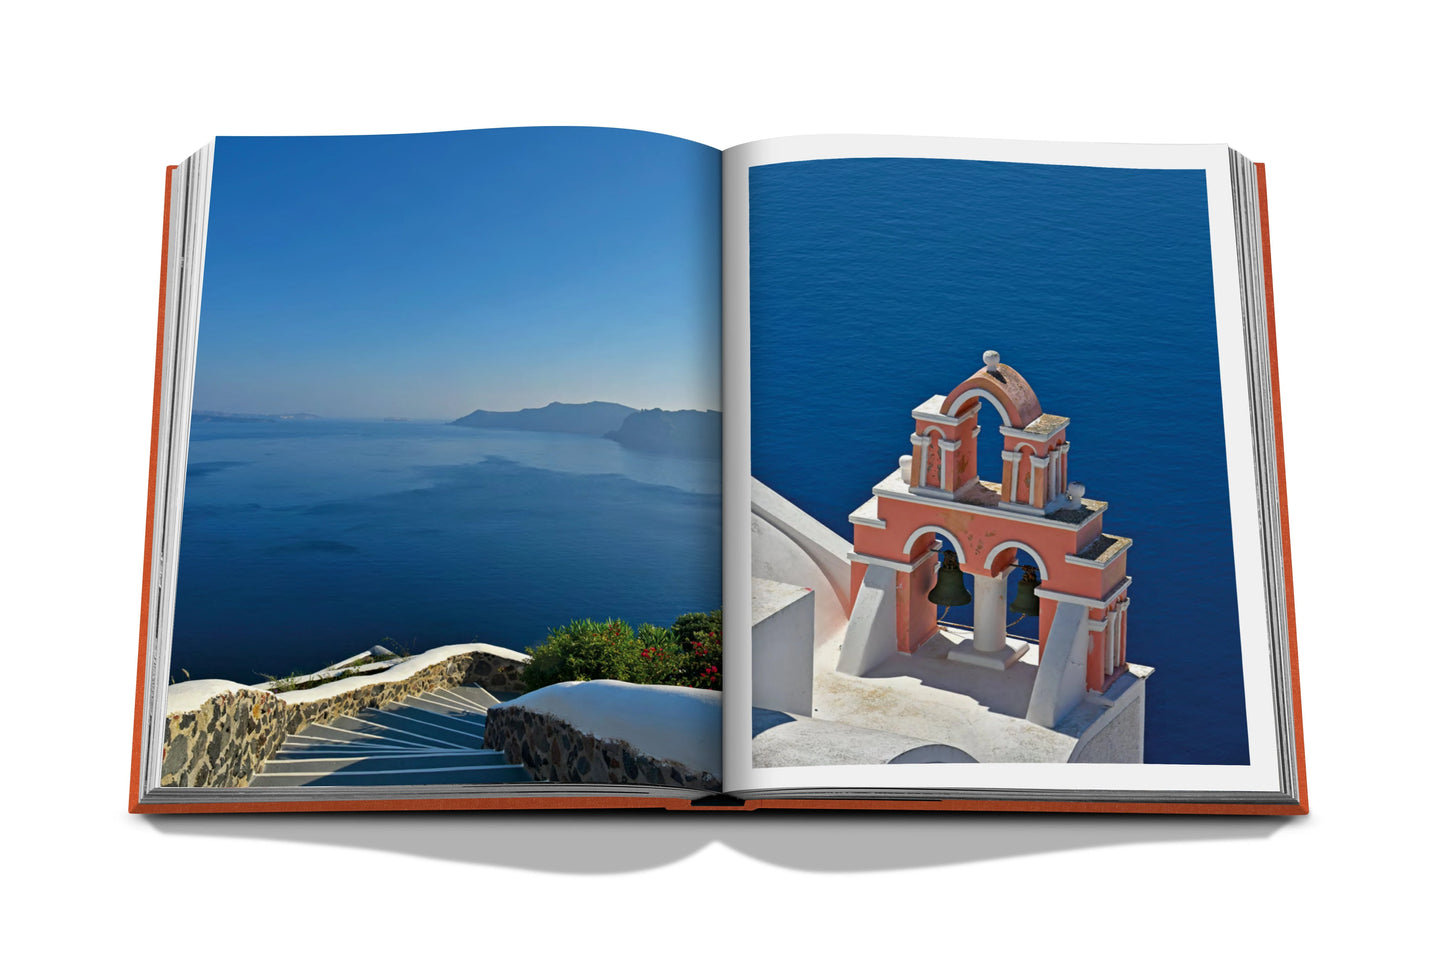 Buch über die griechischen Inseln